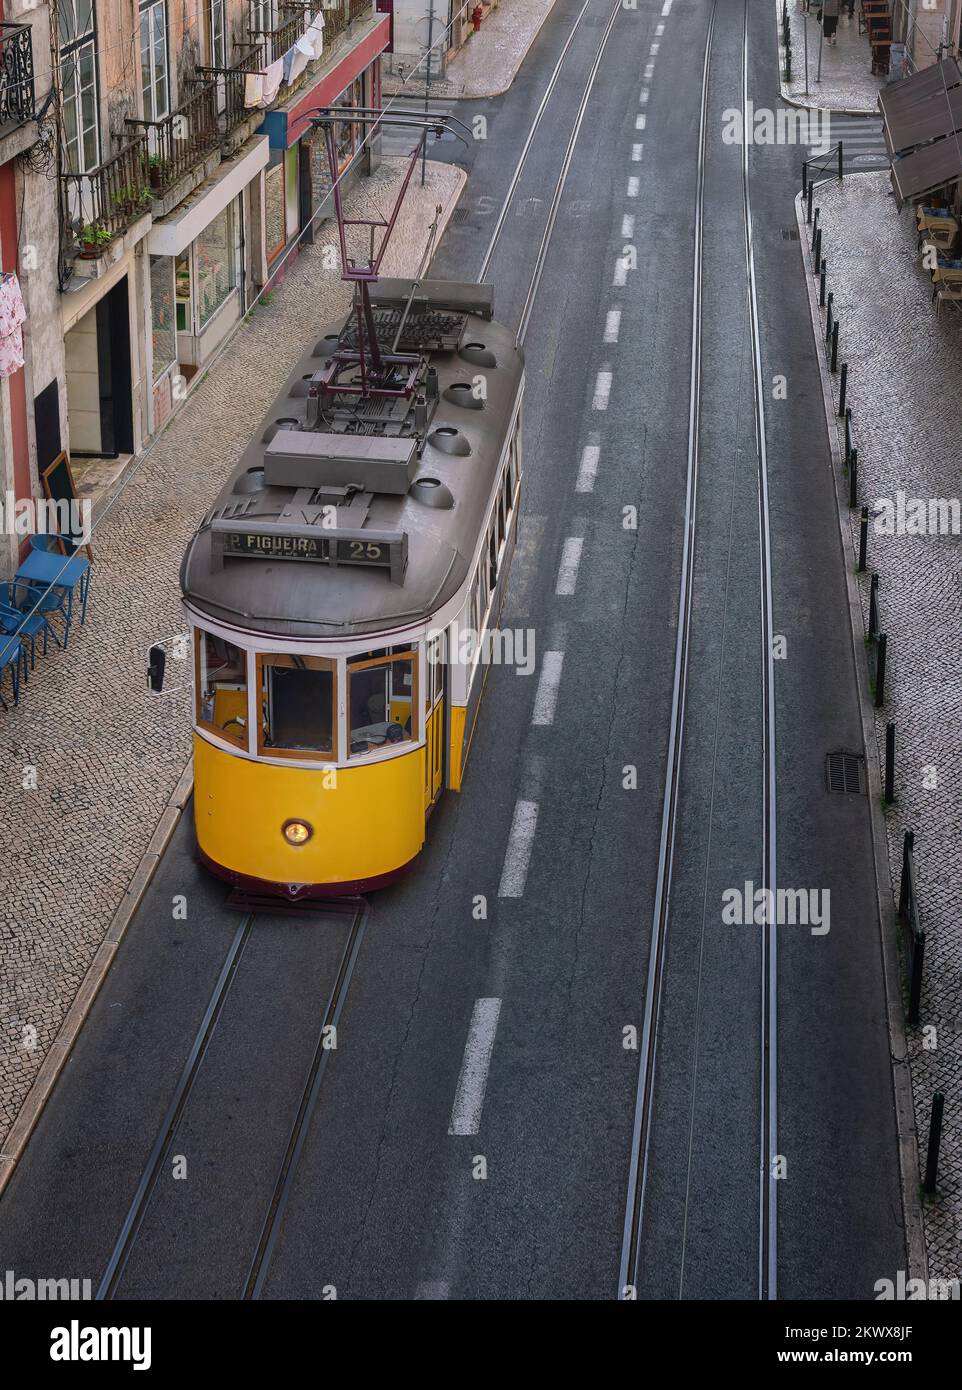 Vue panoramique sur un tramway jaune - Lisbonne, Portugal Banque D'Images